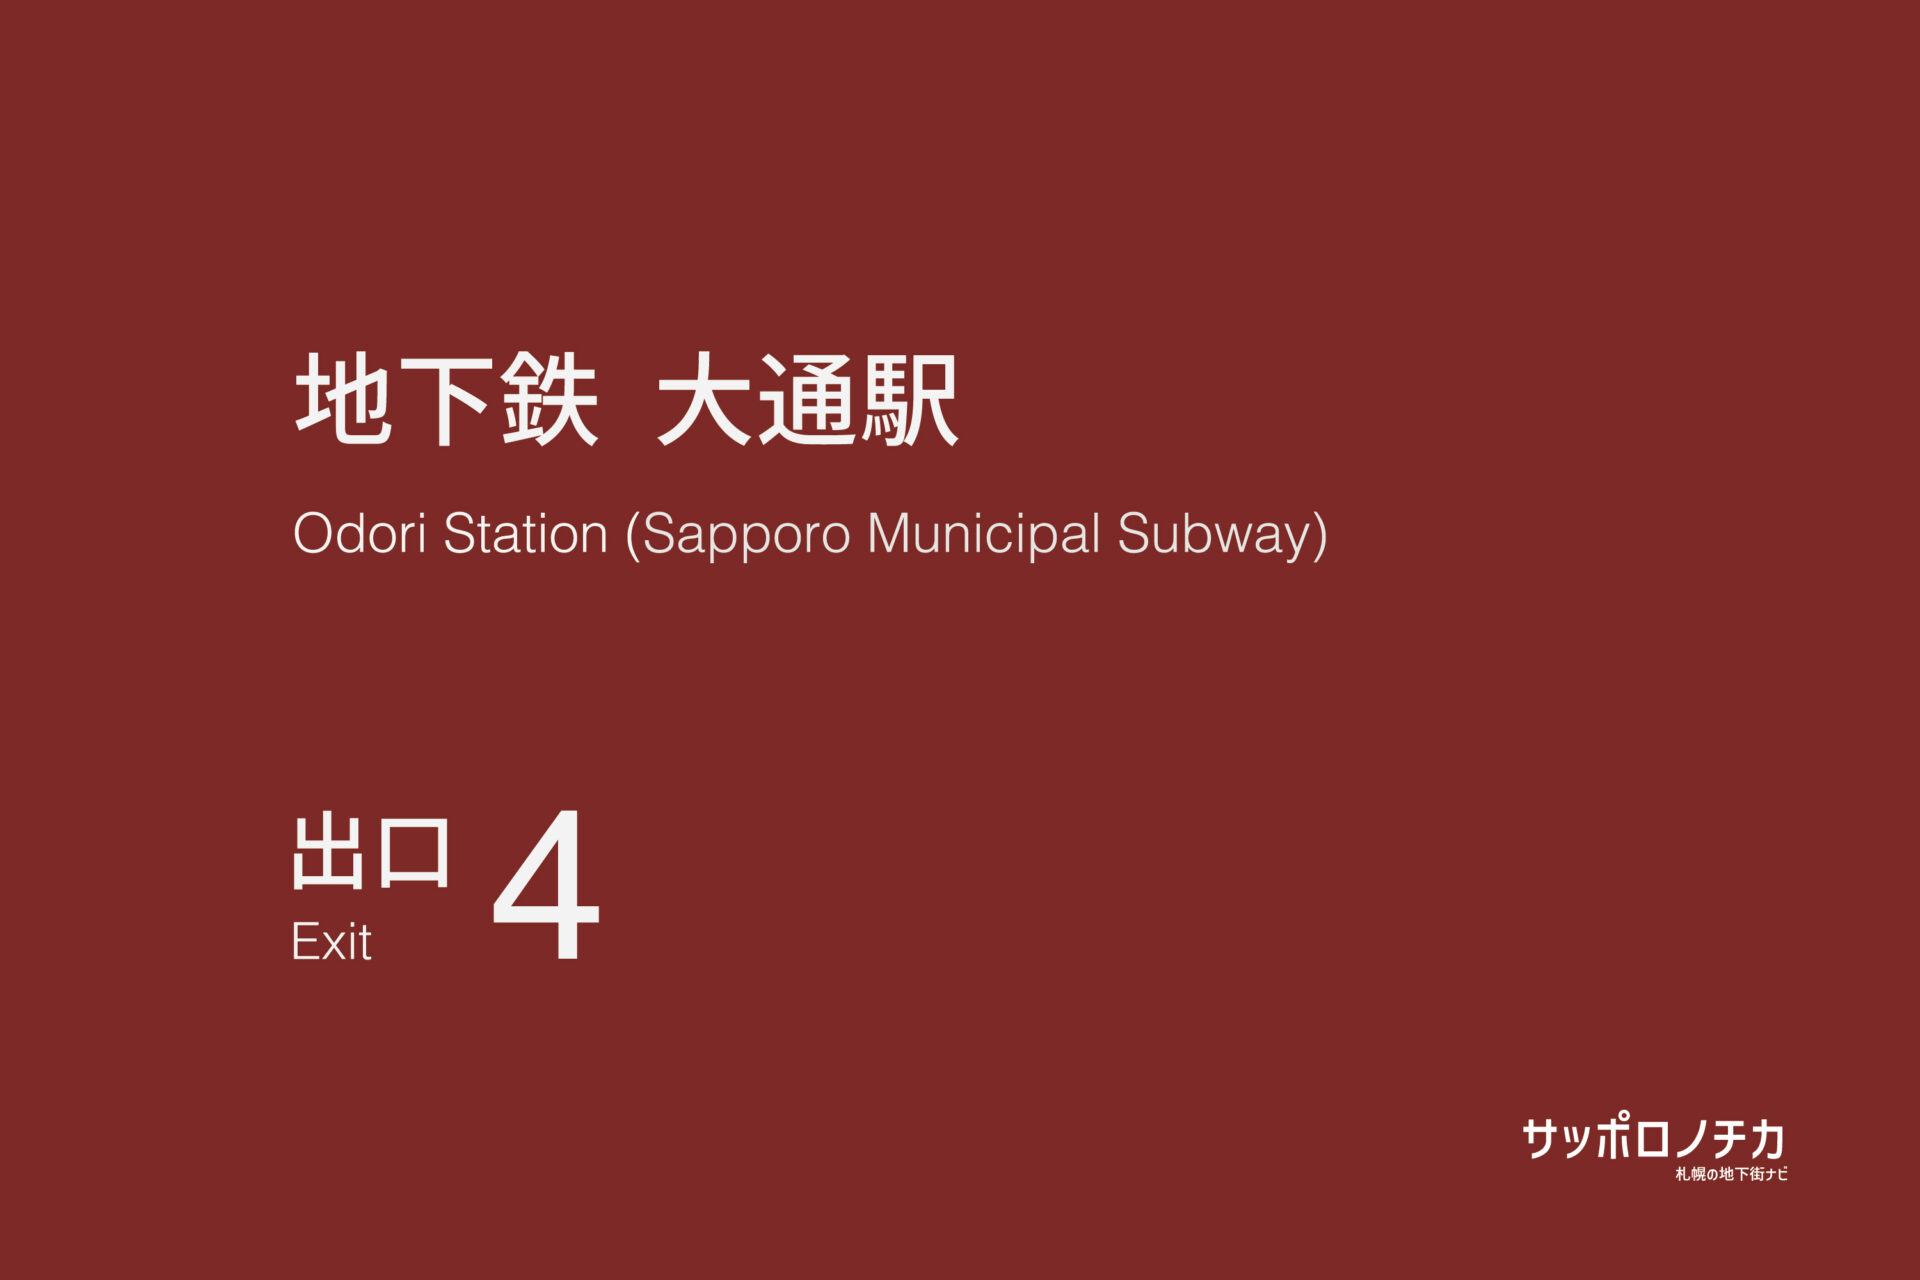 札幌市営地下鉄「大通駅」4番出口